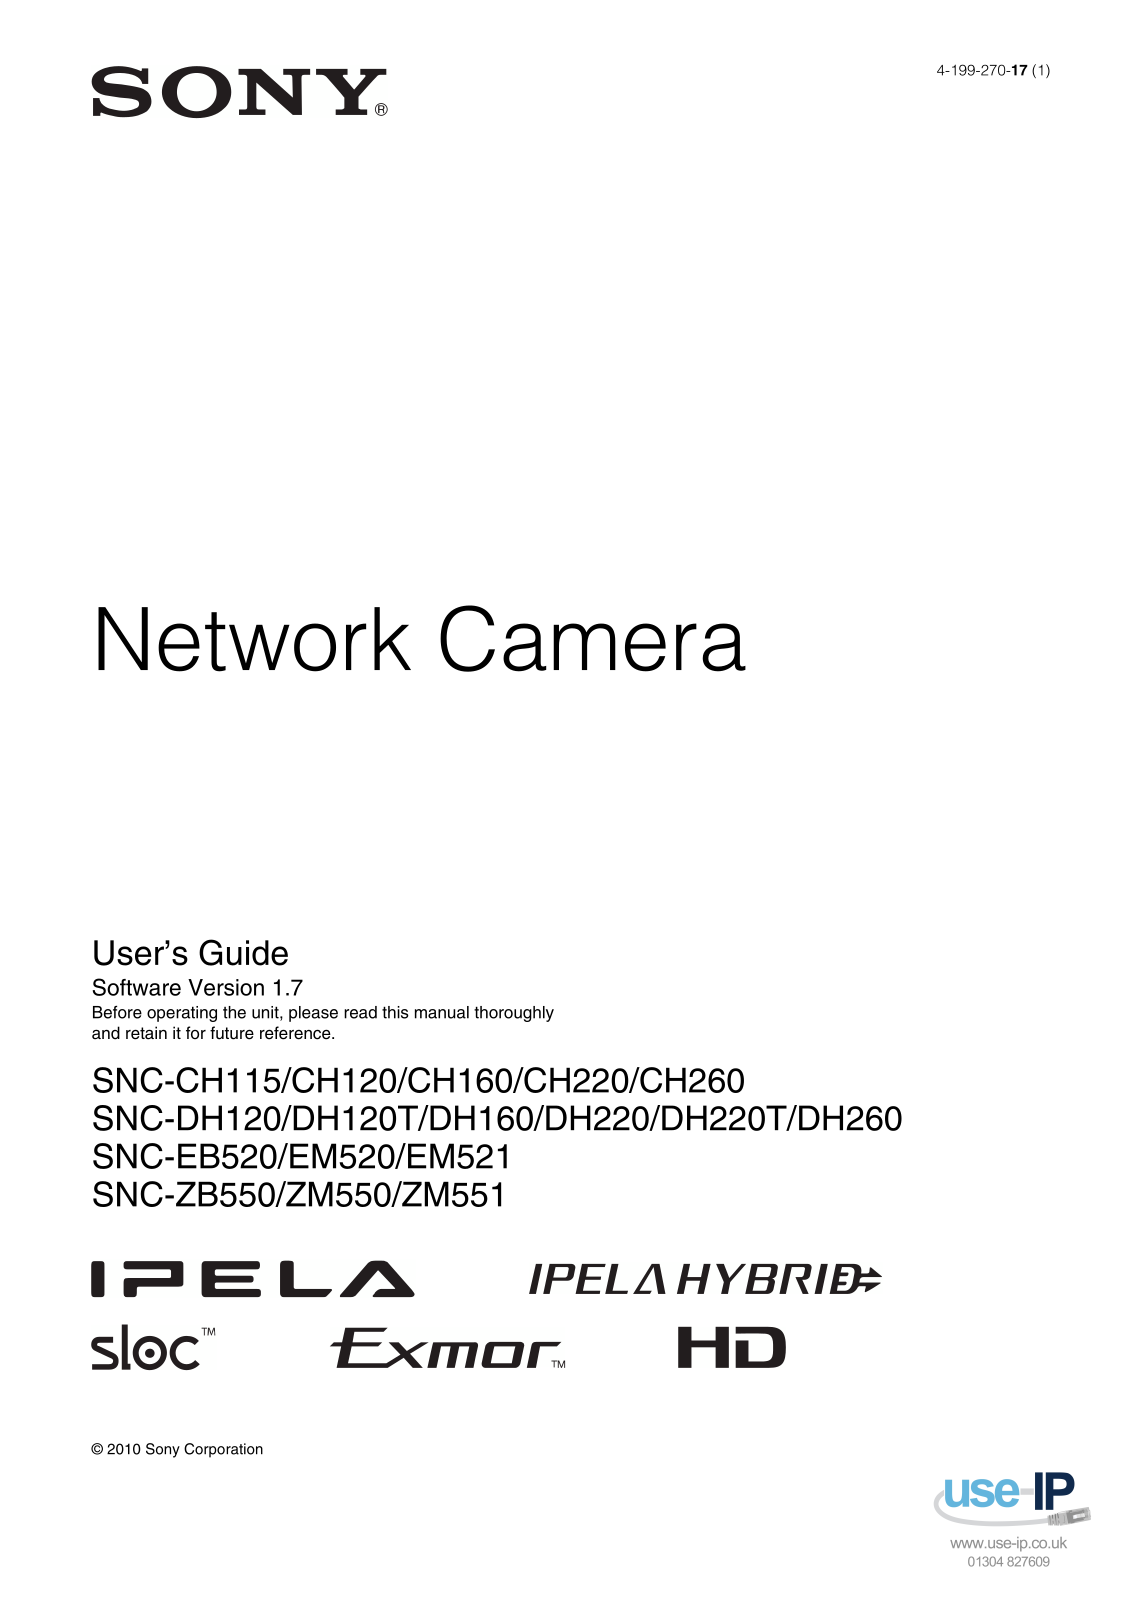 Sony SNC-DH160, SNC-EM521, SNC-DH260, SNC-EM520, SNC-ZM551 User Manual